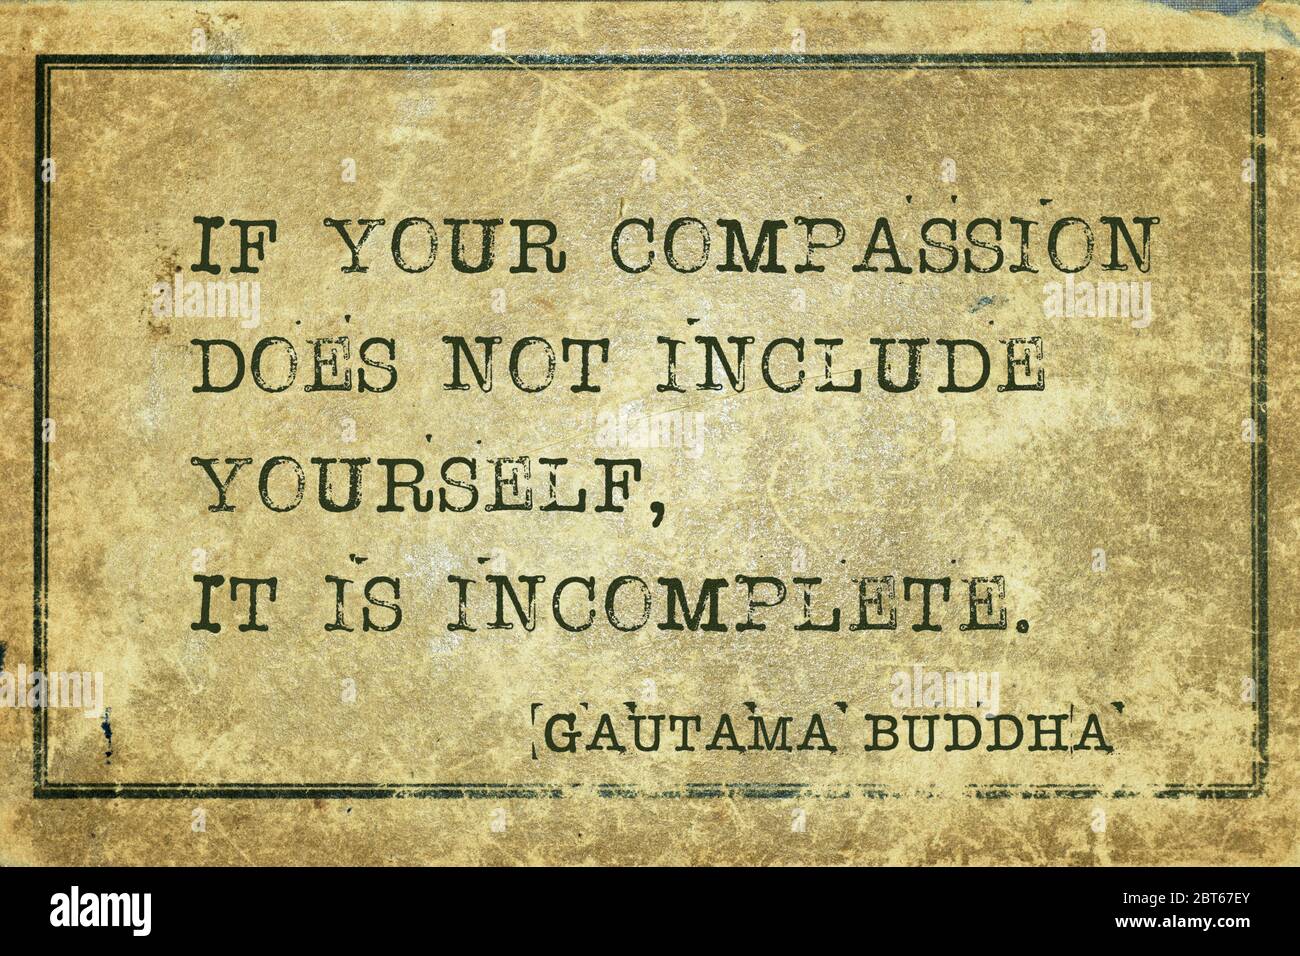 Se la vostra compassione non include voi stessi, è incompleta - citazione famosa del Buddha di Gautama stampata su cartone vintage grunge Foto Stock